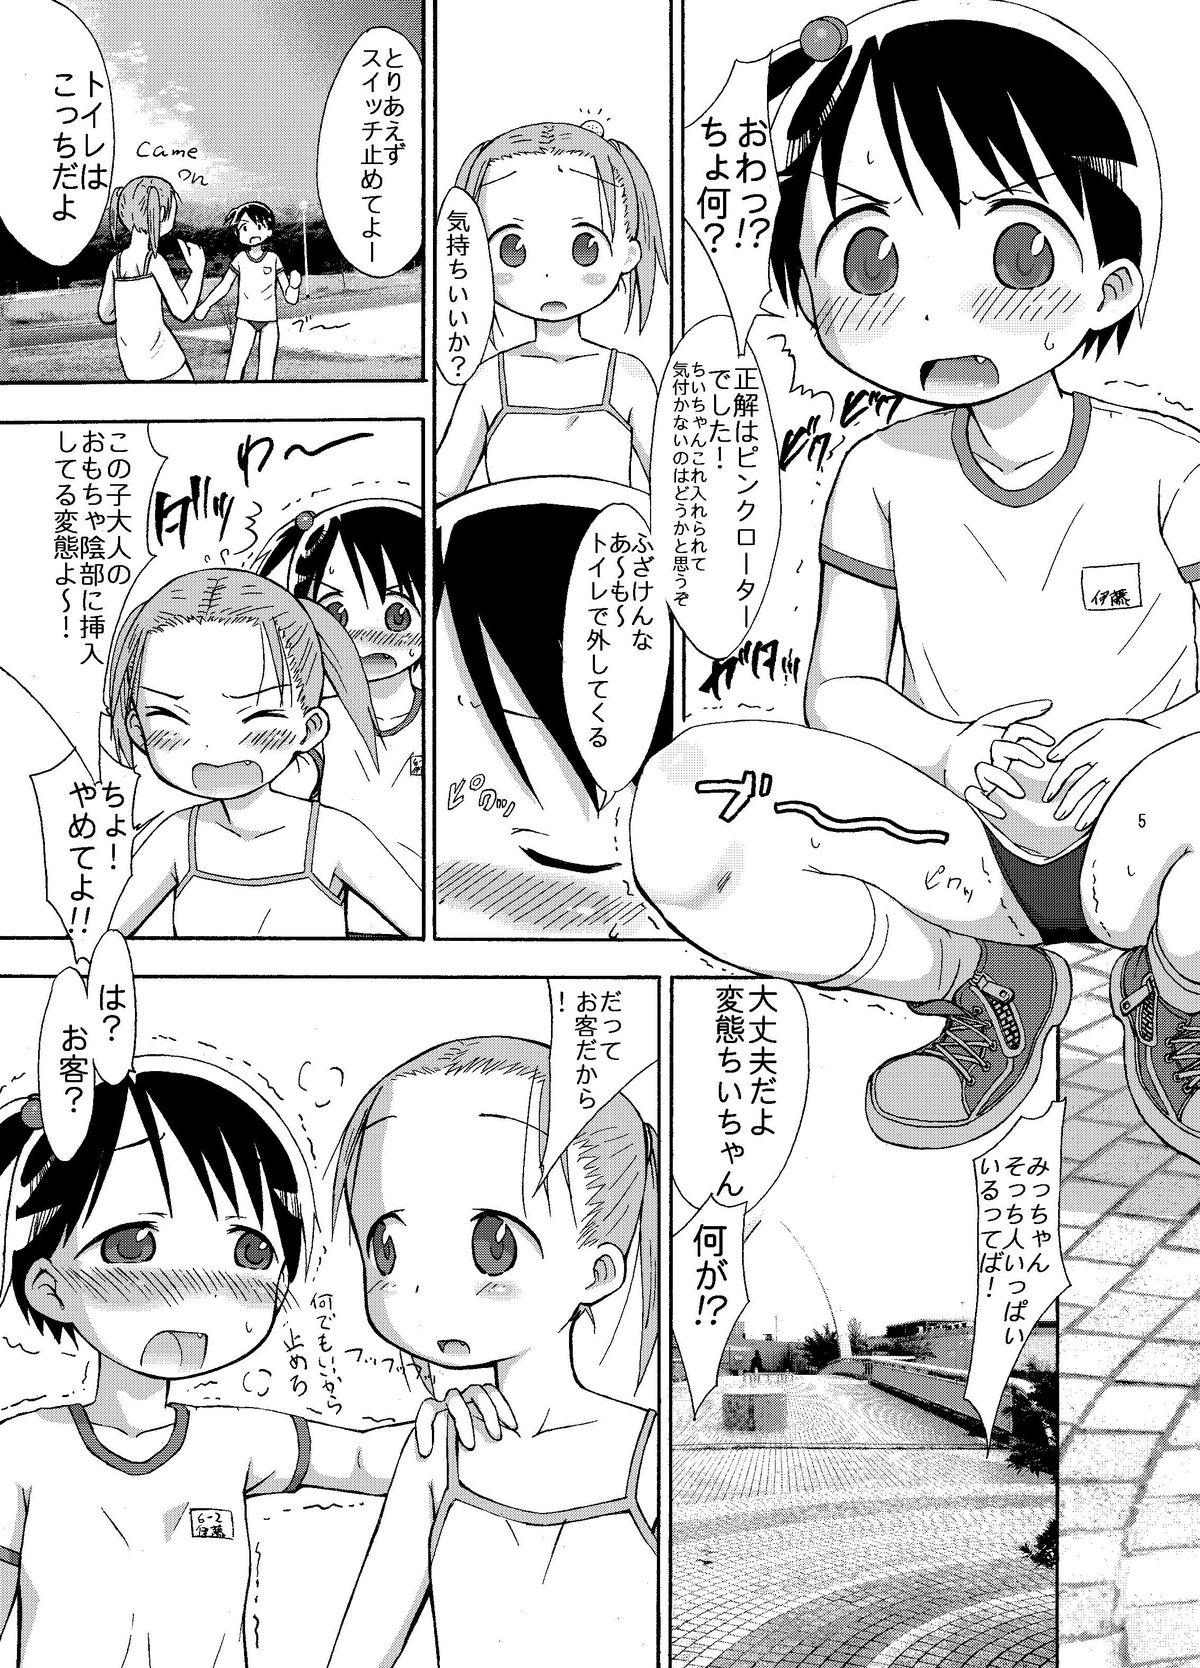 Free Real Porn mashimaro ism L - Ichigo mashimaro Girlfriends - Page 5